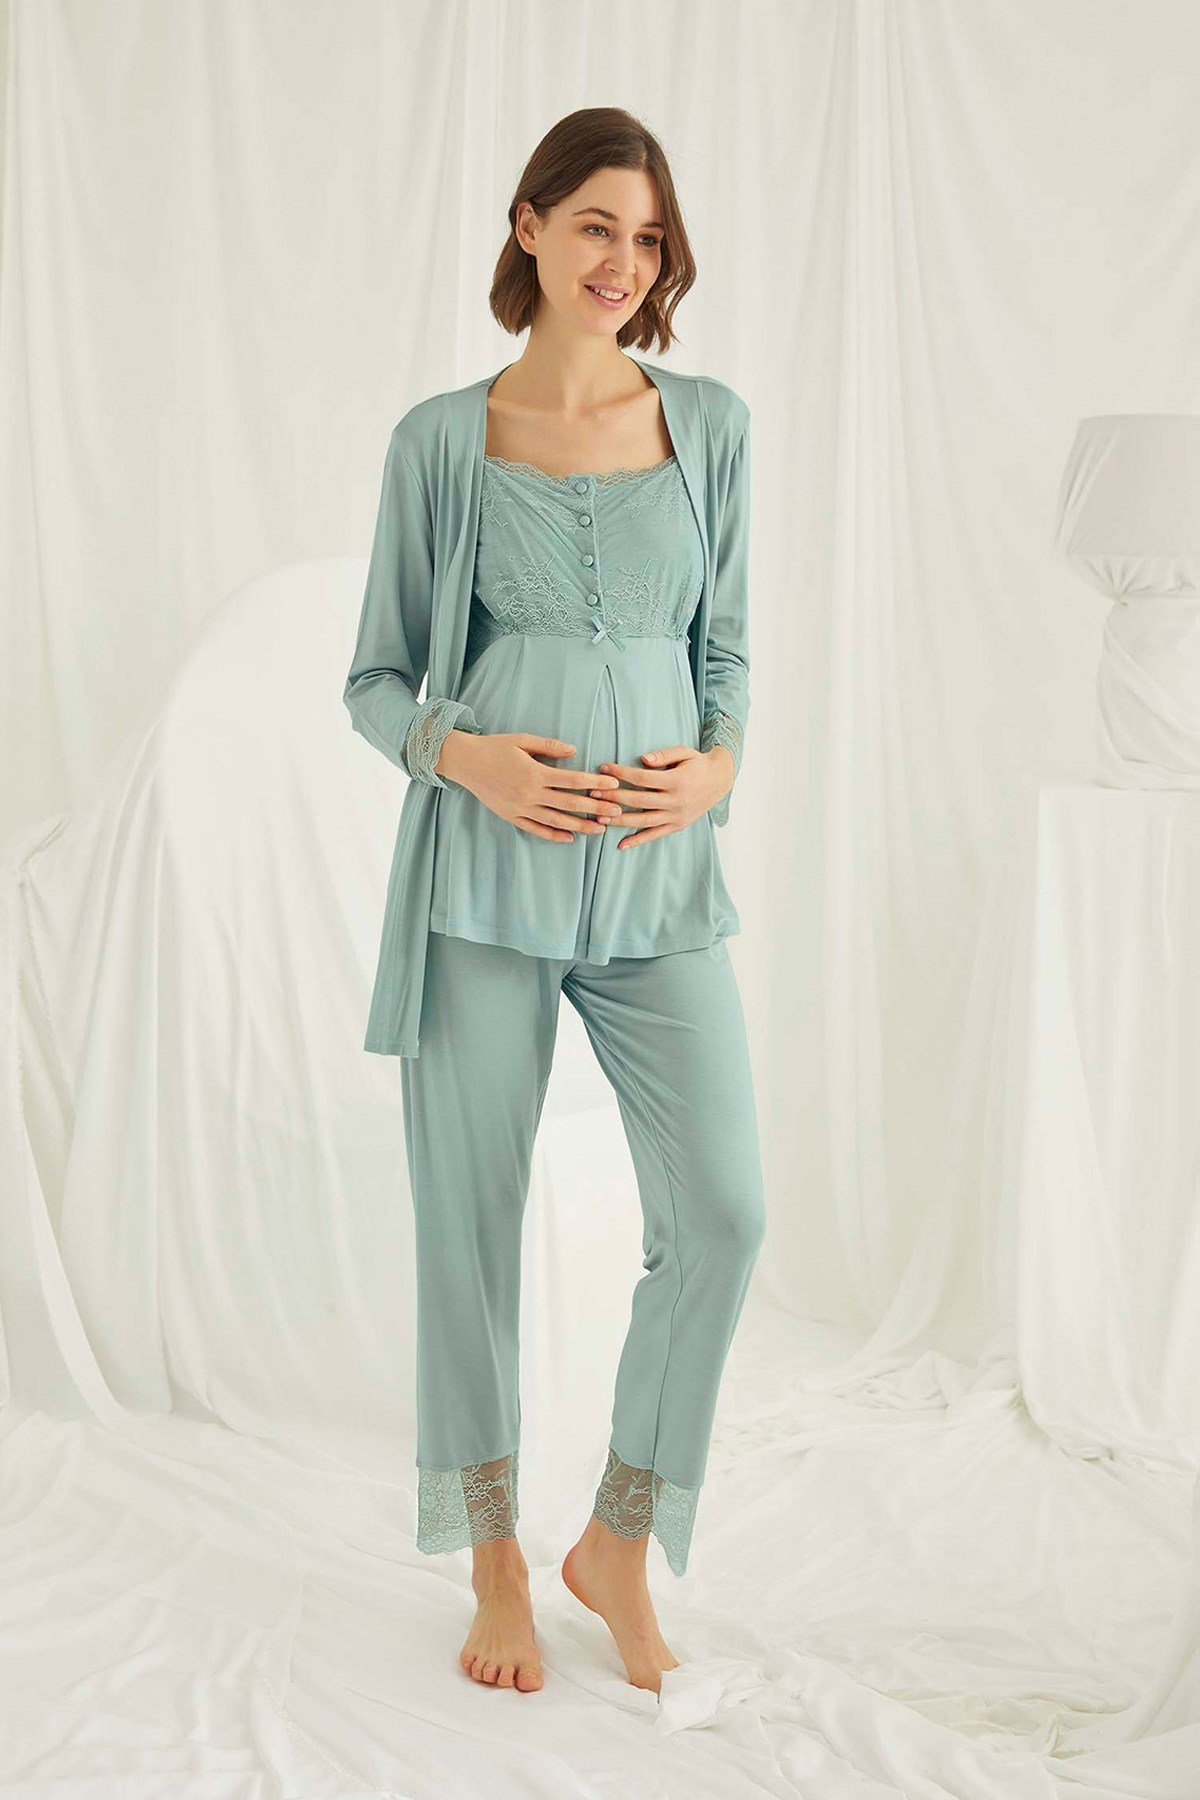 Monamise 18468 Lace Maternity Nursing Pajamas Set with Robe